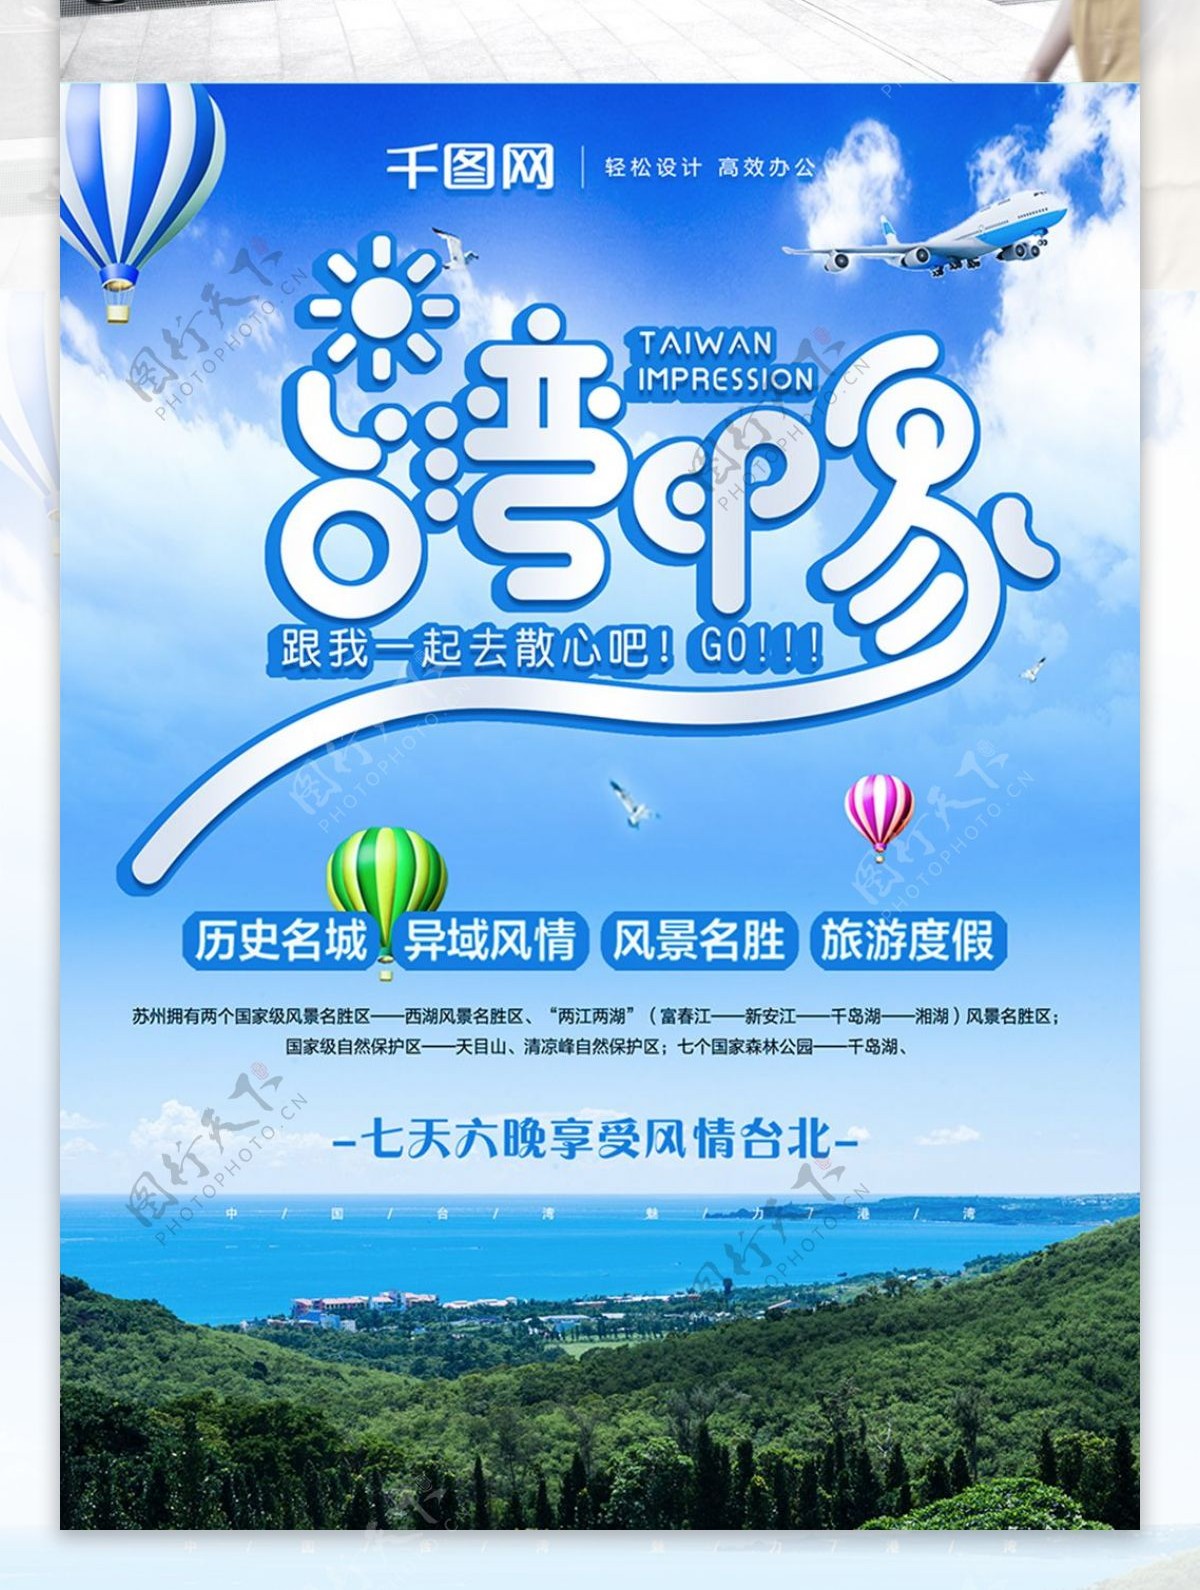 原创创意字体设计清新简约台湾旅游宣传海报